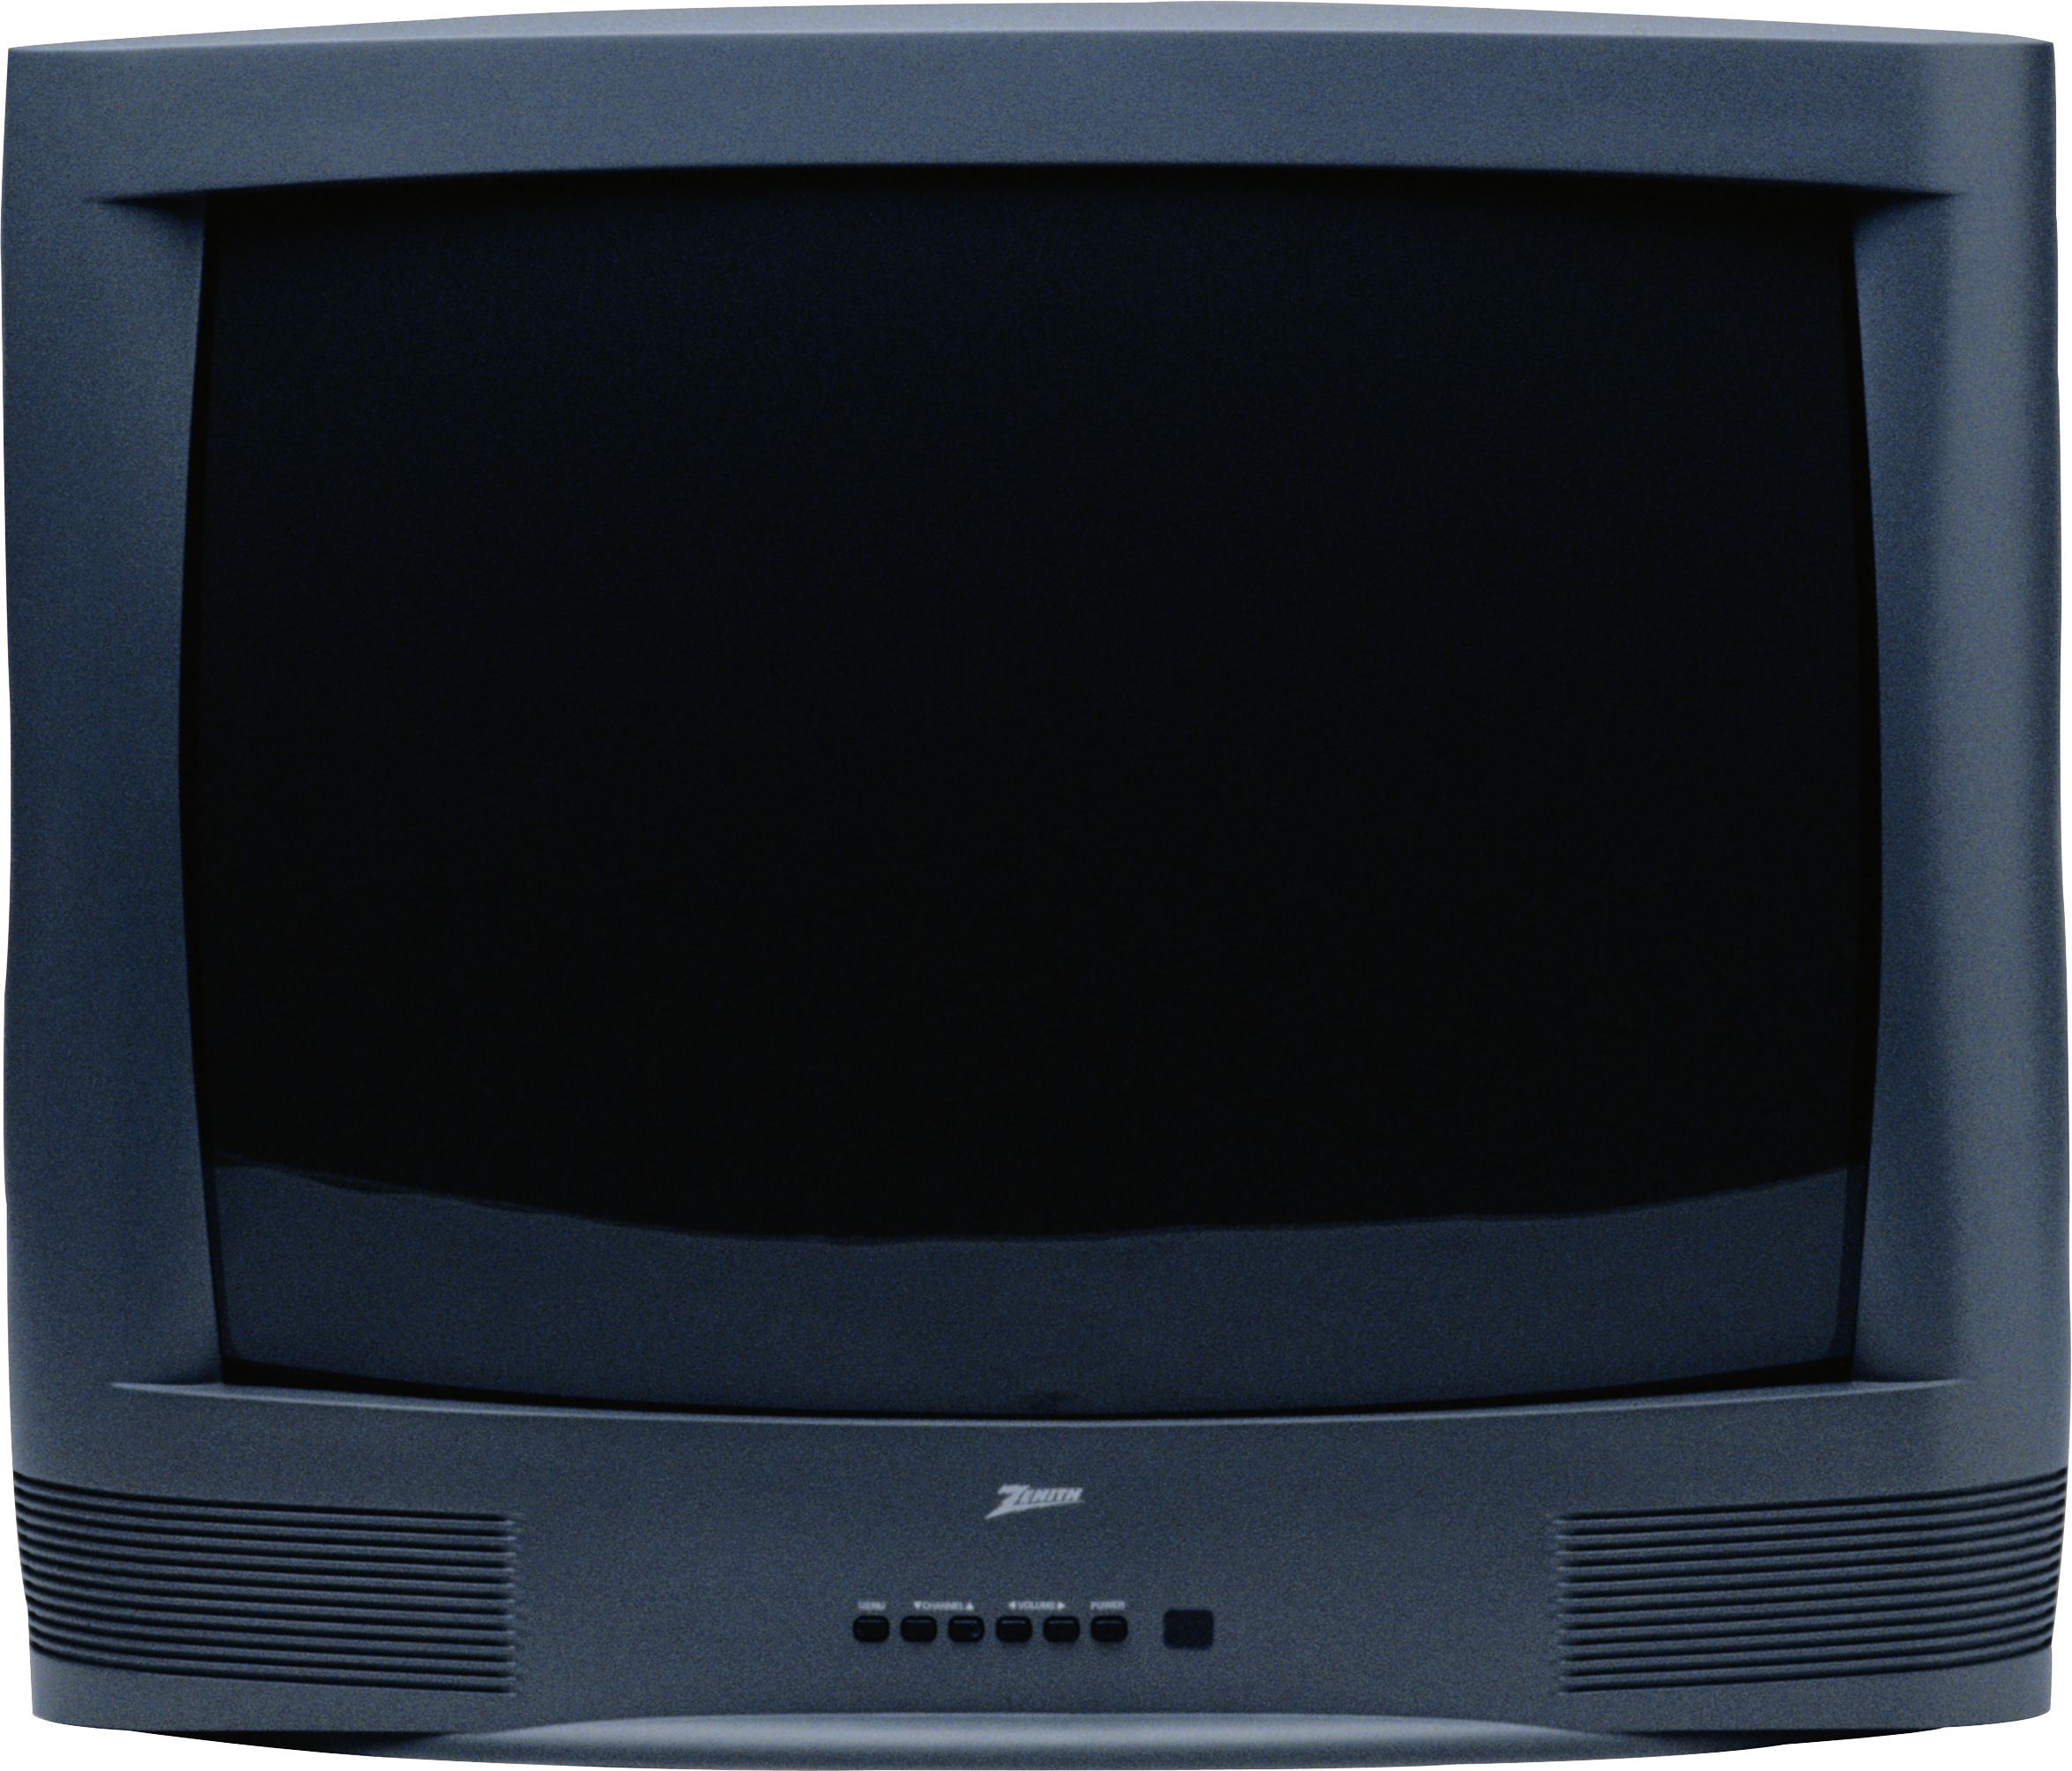 Телевизор обычный куплю. Телевизор Тошиба кинескопный. Старый телевизор. ЭЛТ телевизор. Телевизор на прозрачном фоне.